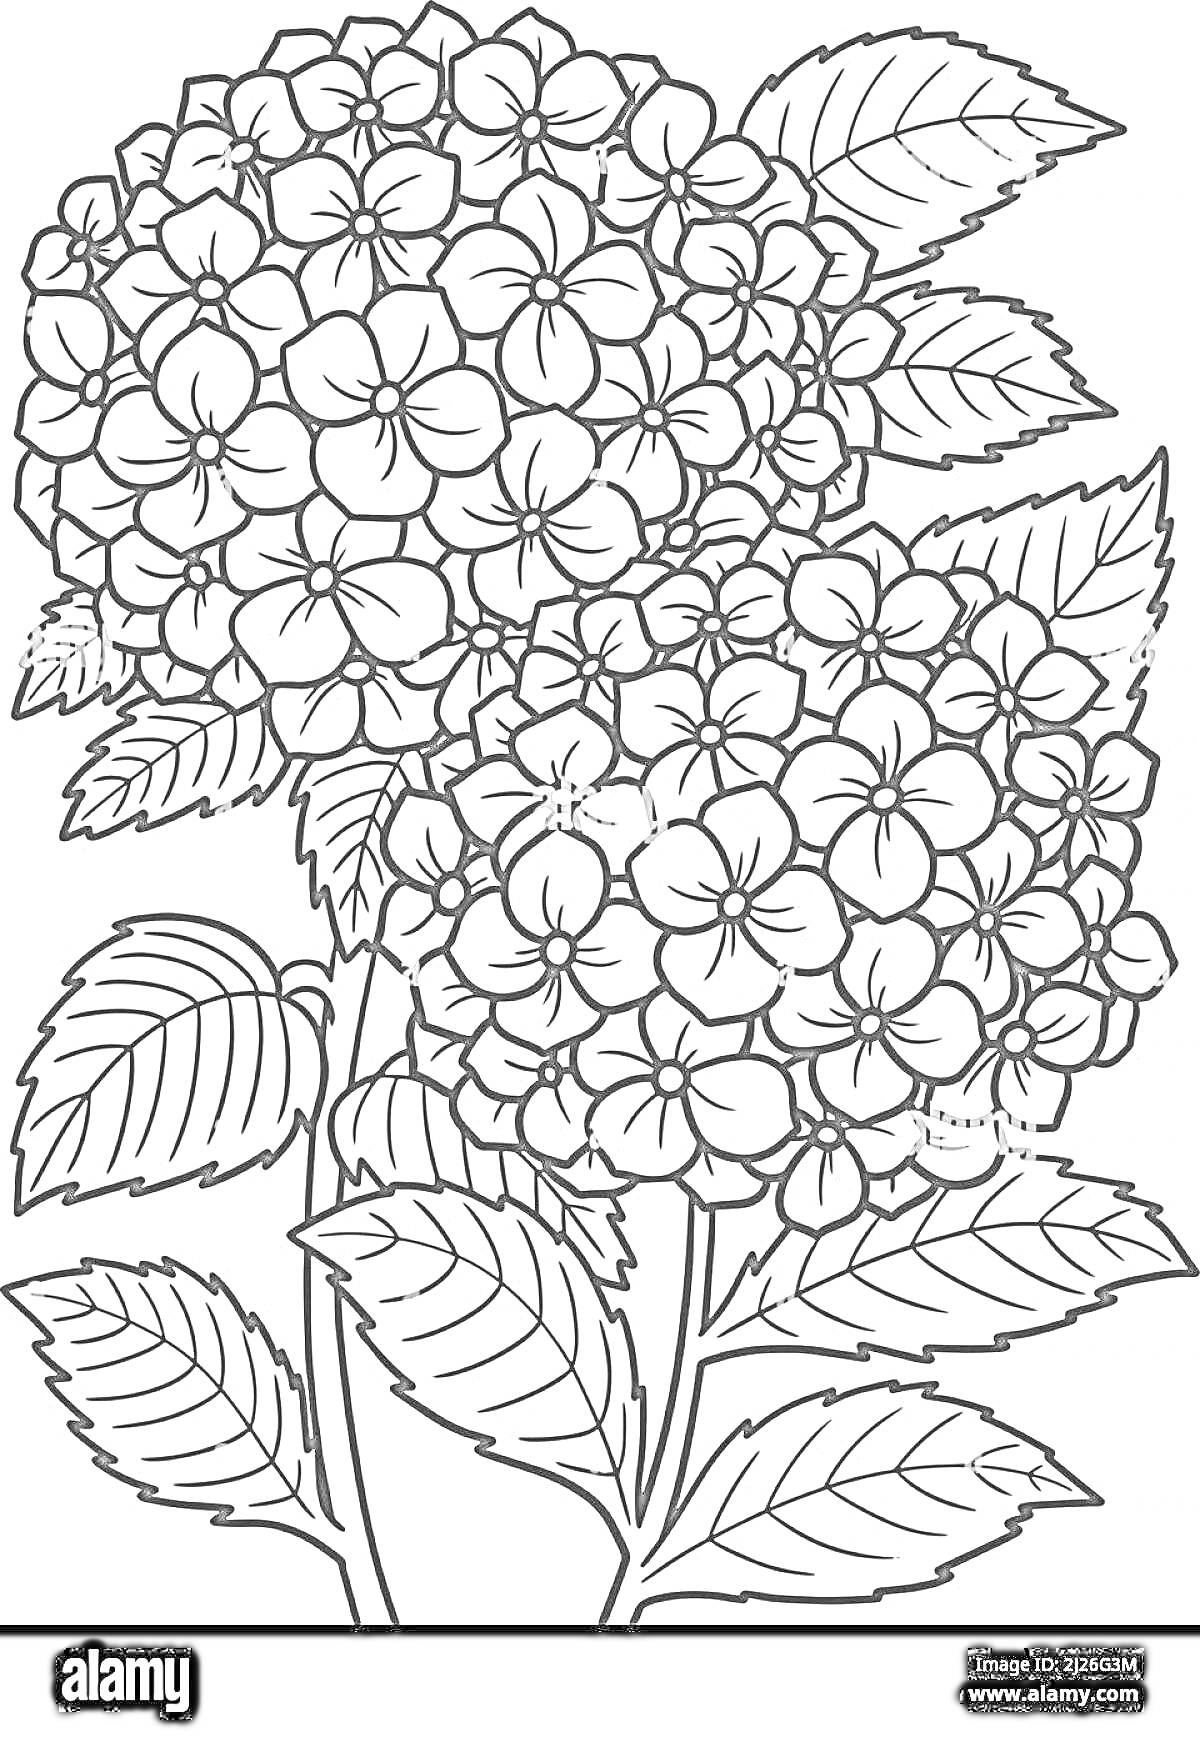 Раскраска Гортензия с крупными соцветиями и листьями